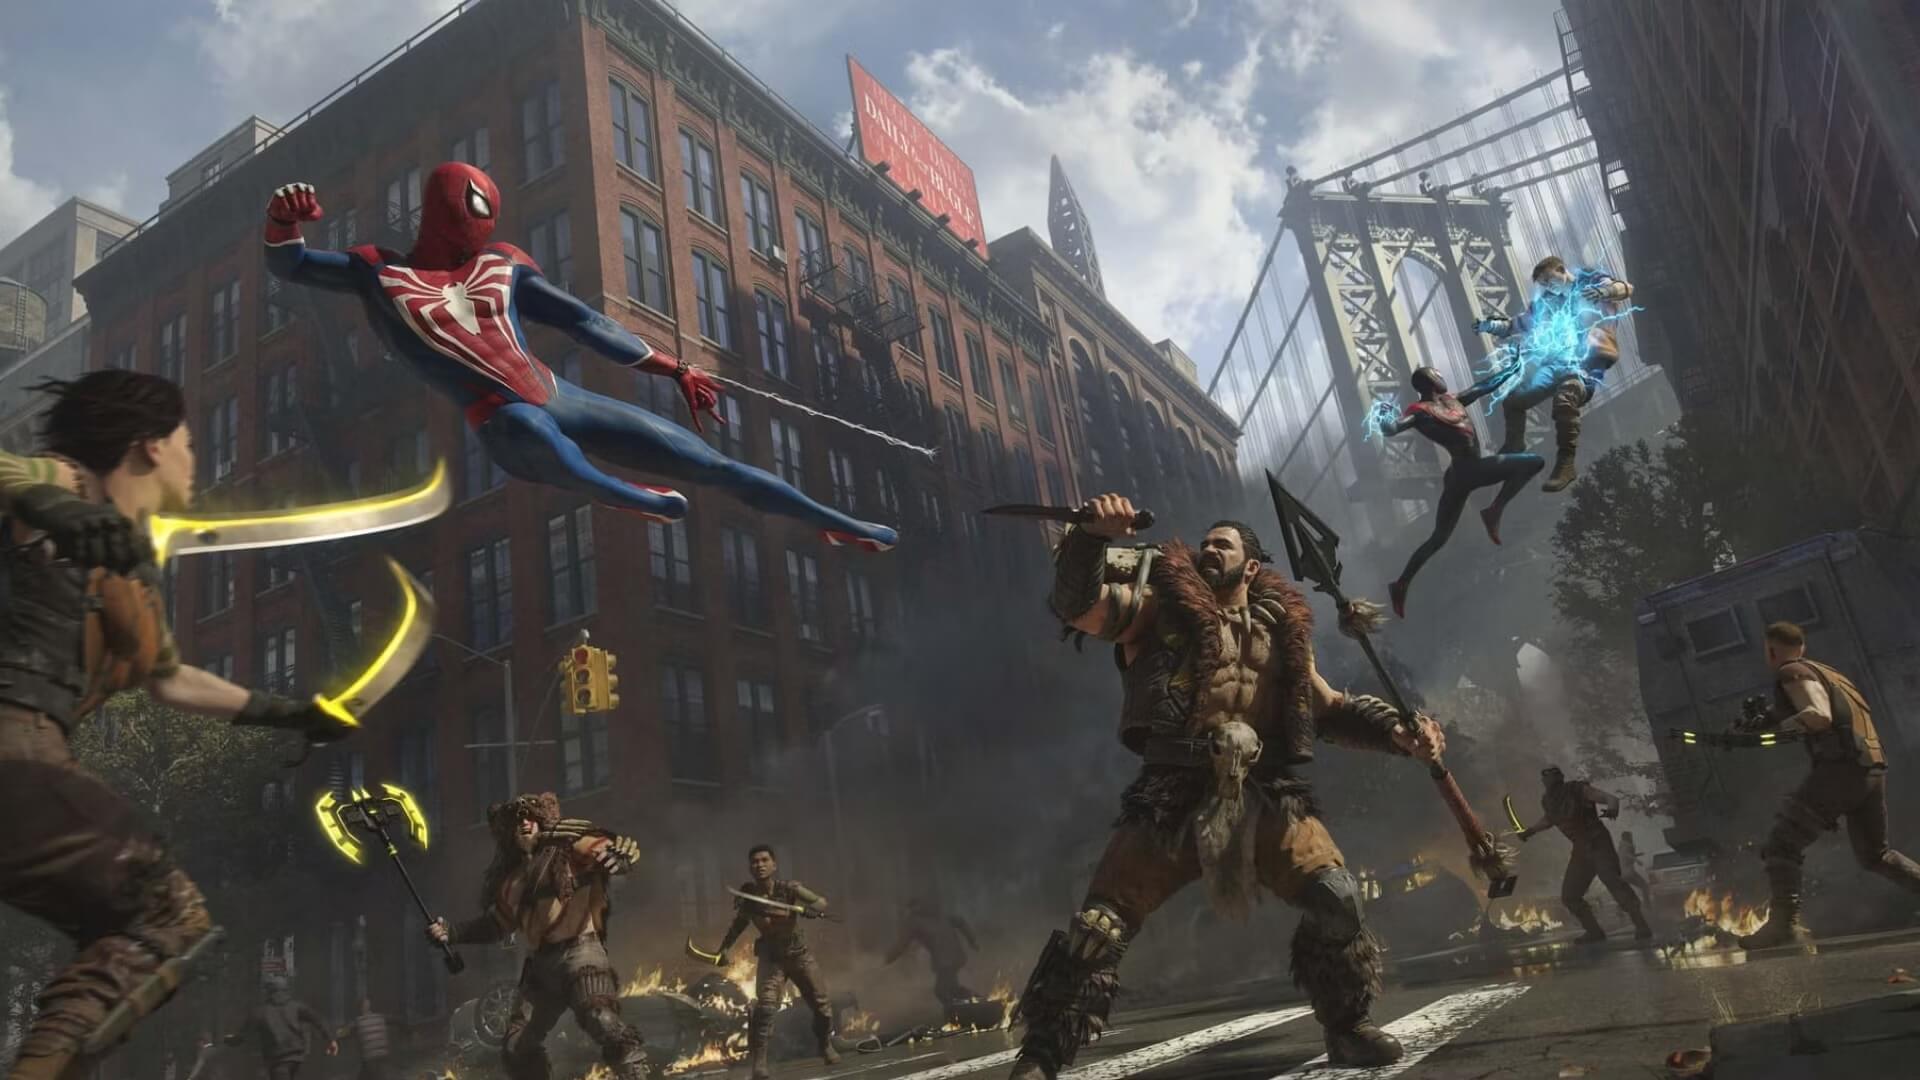 Chế độ Roguelike lấy cảm hứng từ The Last of Us cho Spider-Man 2 sẽ ra sao?